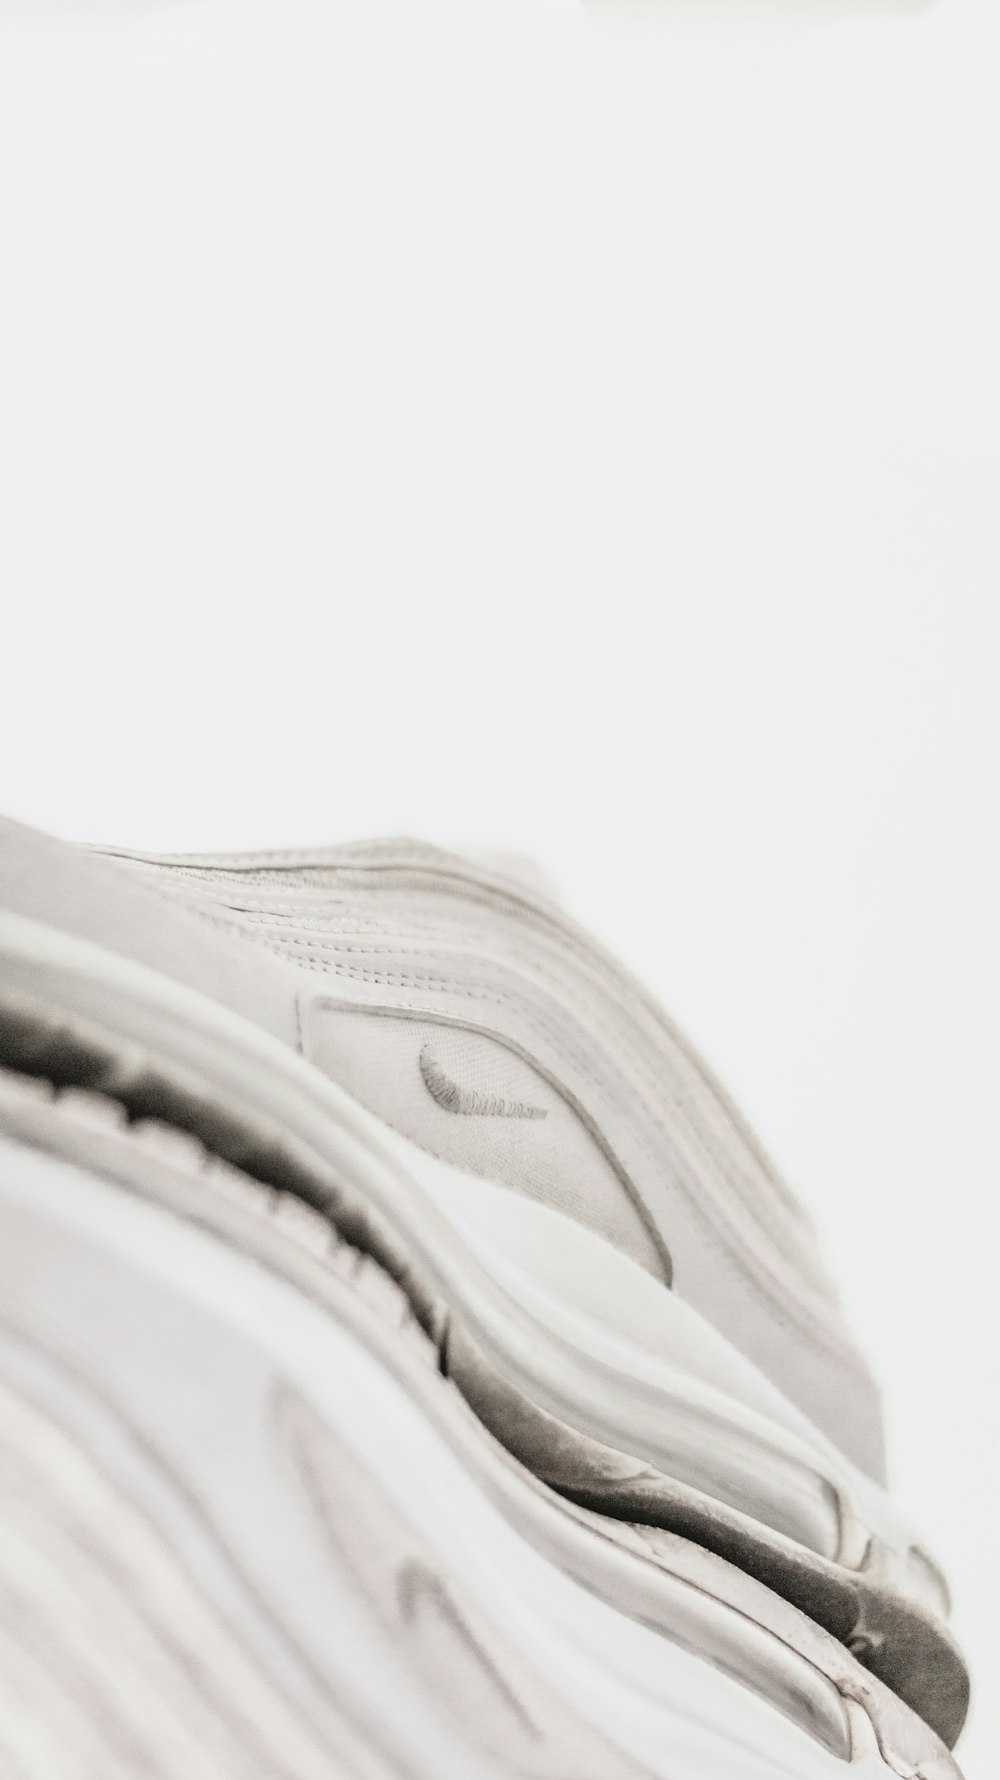 Scarpe da ginnastica Nike bianche e grigie